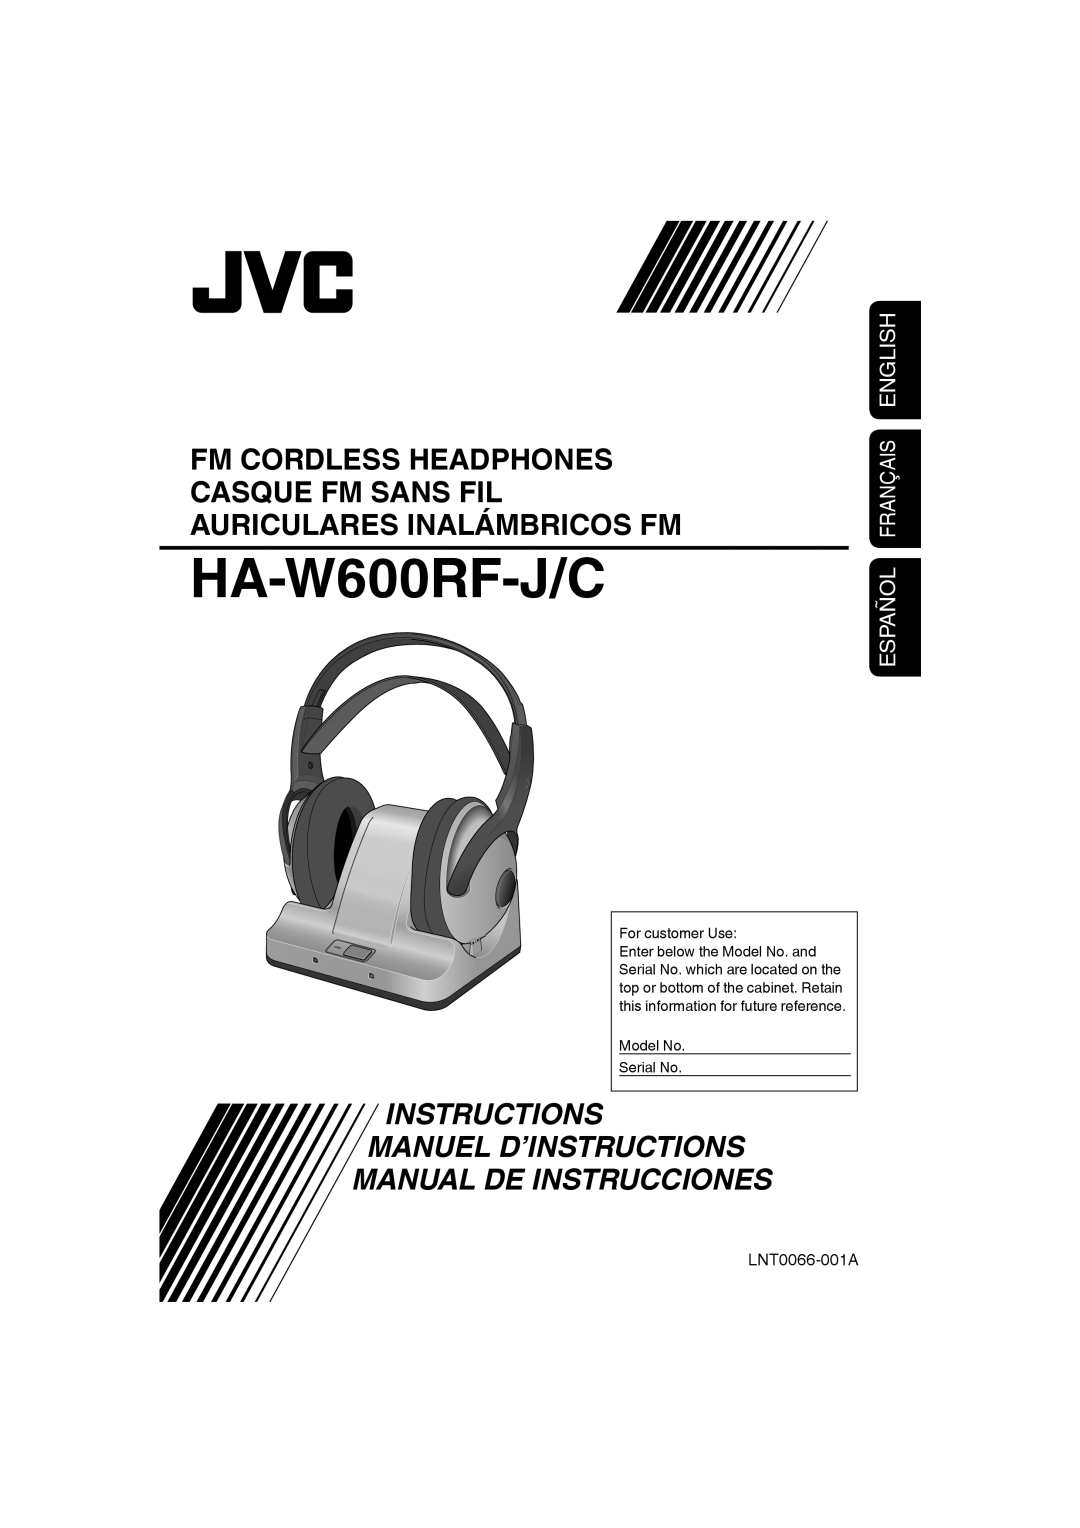 JVC HAW600RF manual HA-W600RF-J/C, Español Français English, Manuel D’Instructions Manual De Instrucciones 